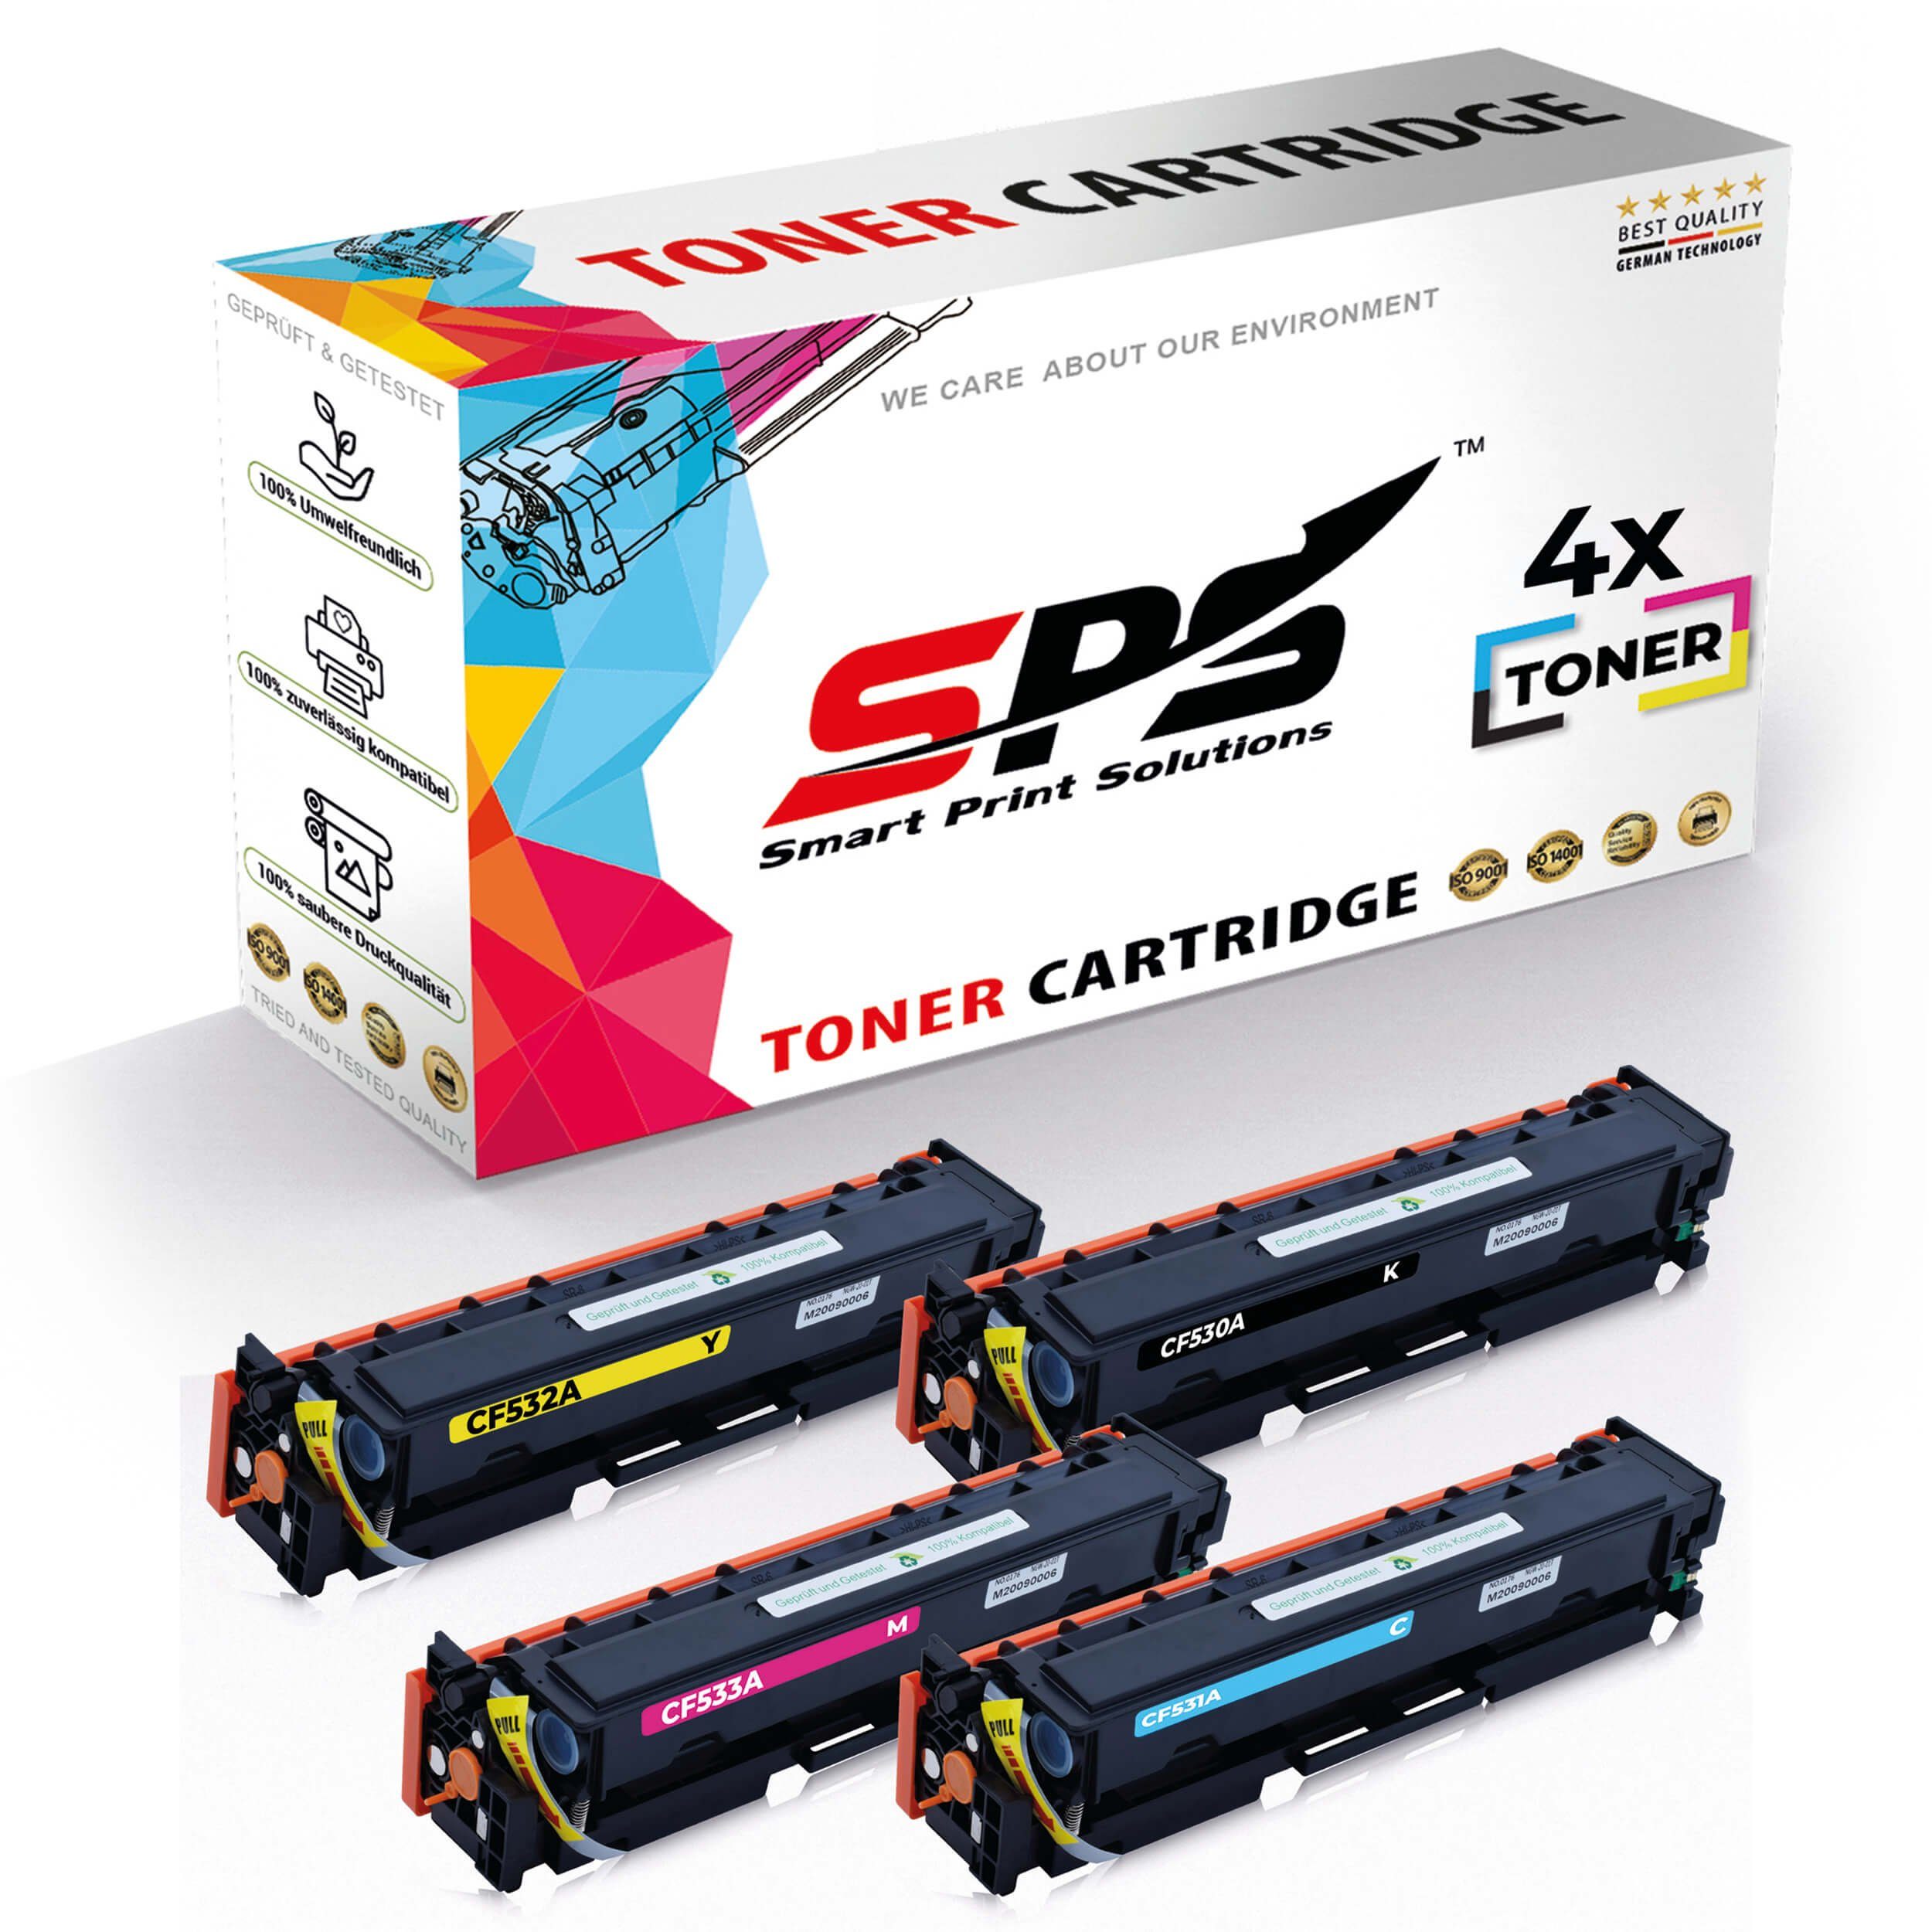 SPS Tonerkartusche 4x Multipack Set Kompatibel für HP Color LaserJet CM 2320 WI MFP (304A, (4er Pack)